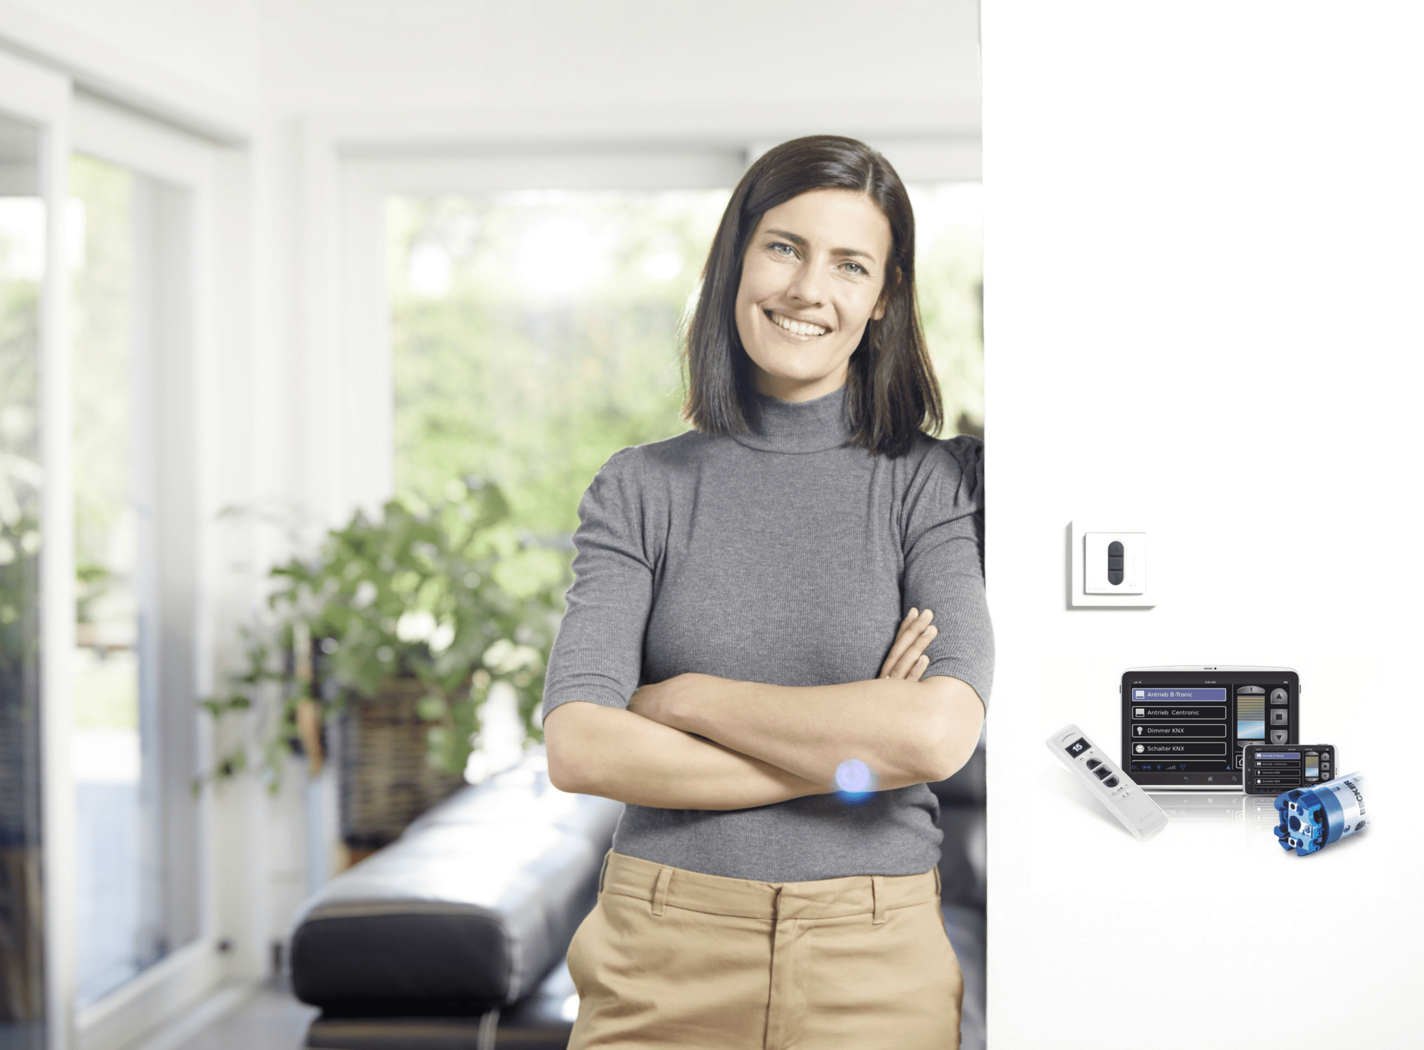 Frau im Wohnzimmer und Gerät für Smart Home